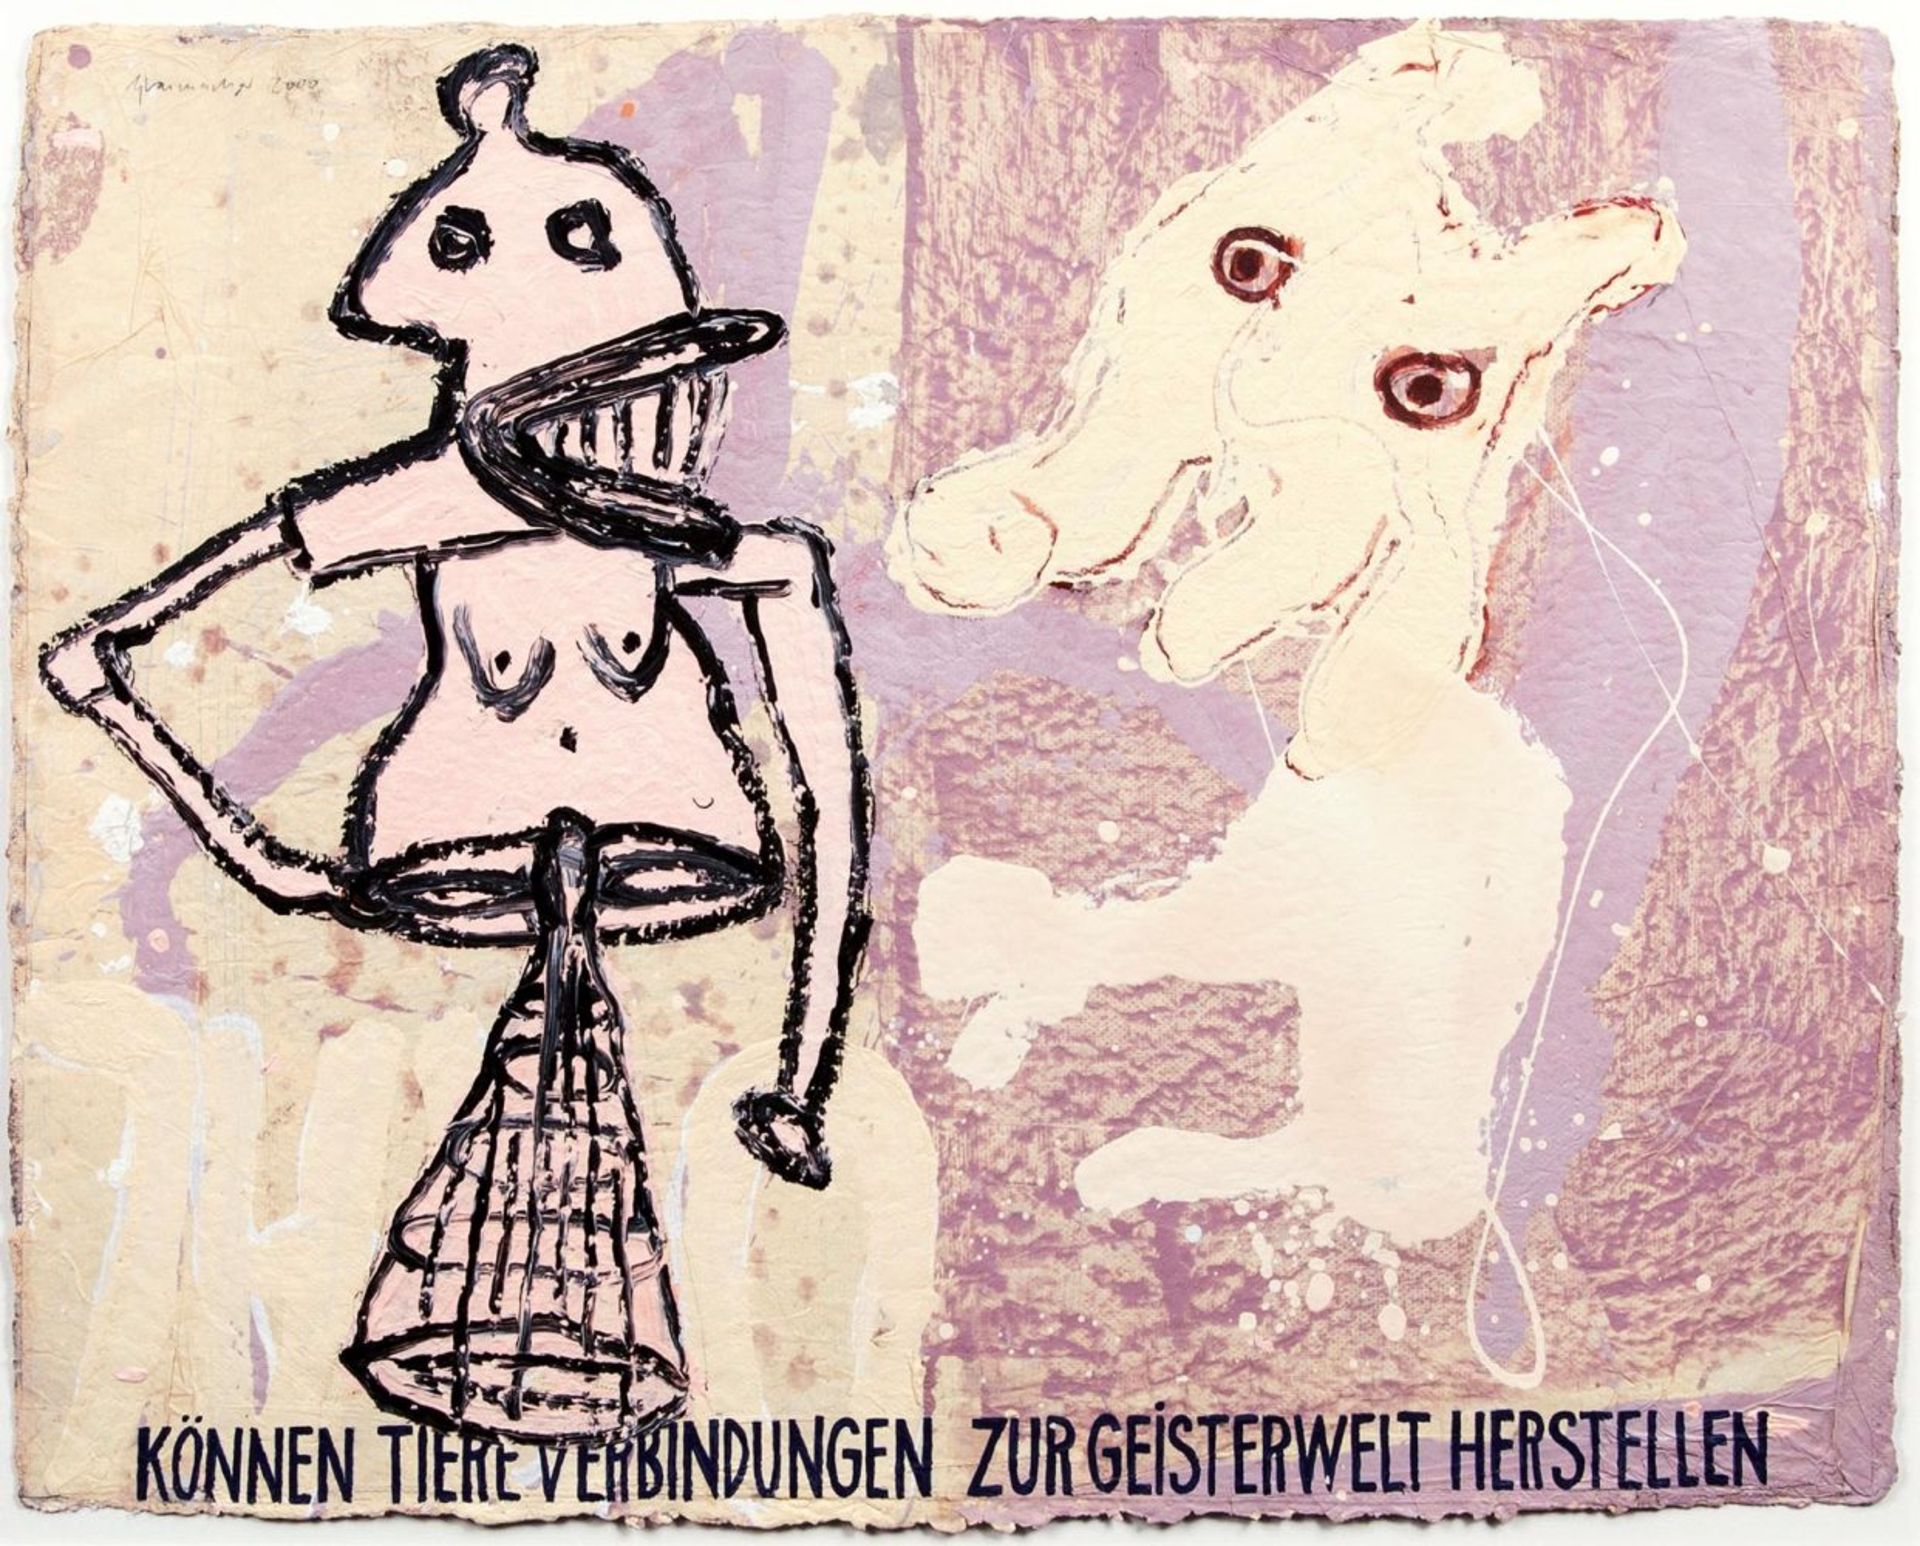 Dieter Glasmacher(Krefeld 1940)Können Tiere Verbindungen zur Geisterwelt herstellenAcryl/Papier/